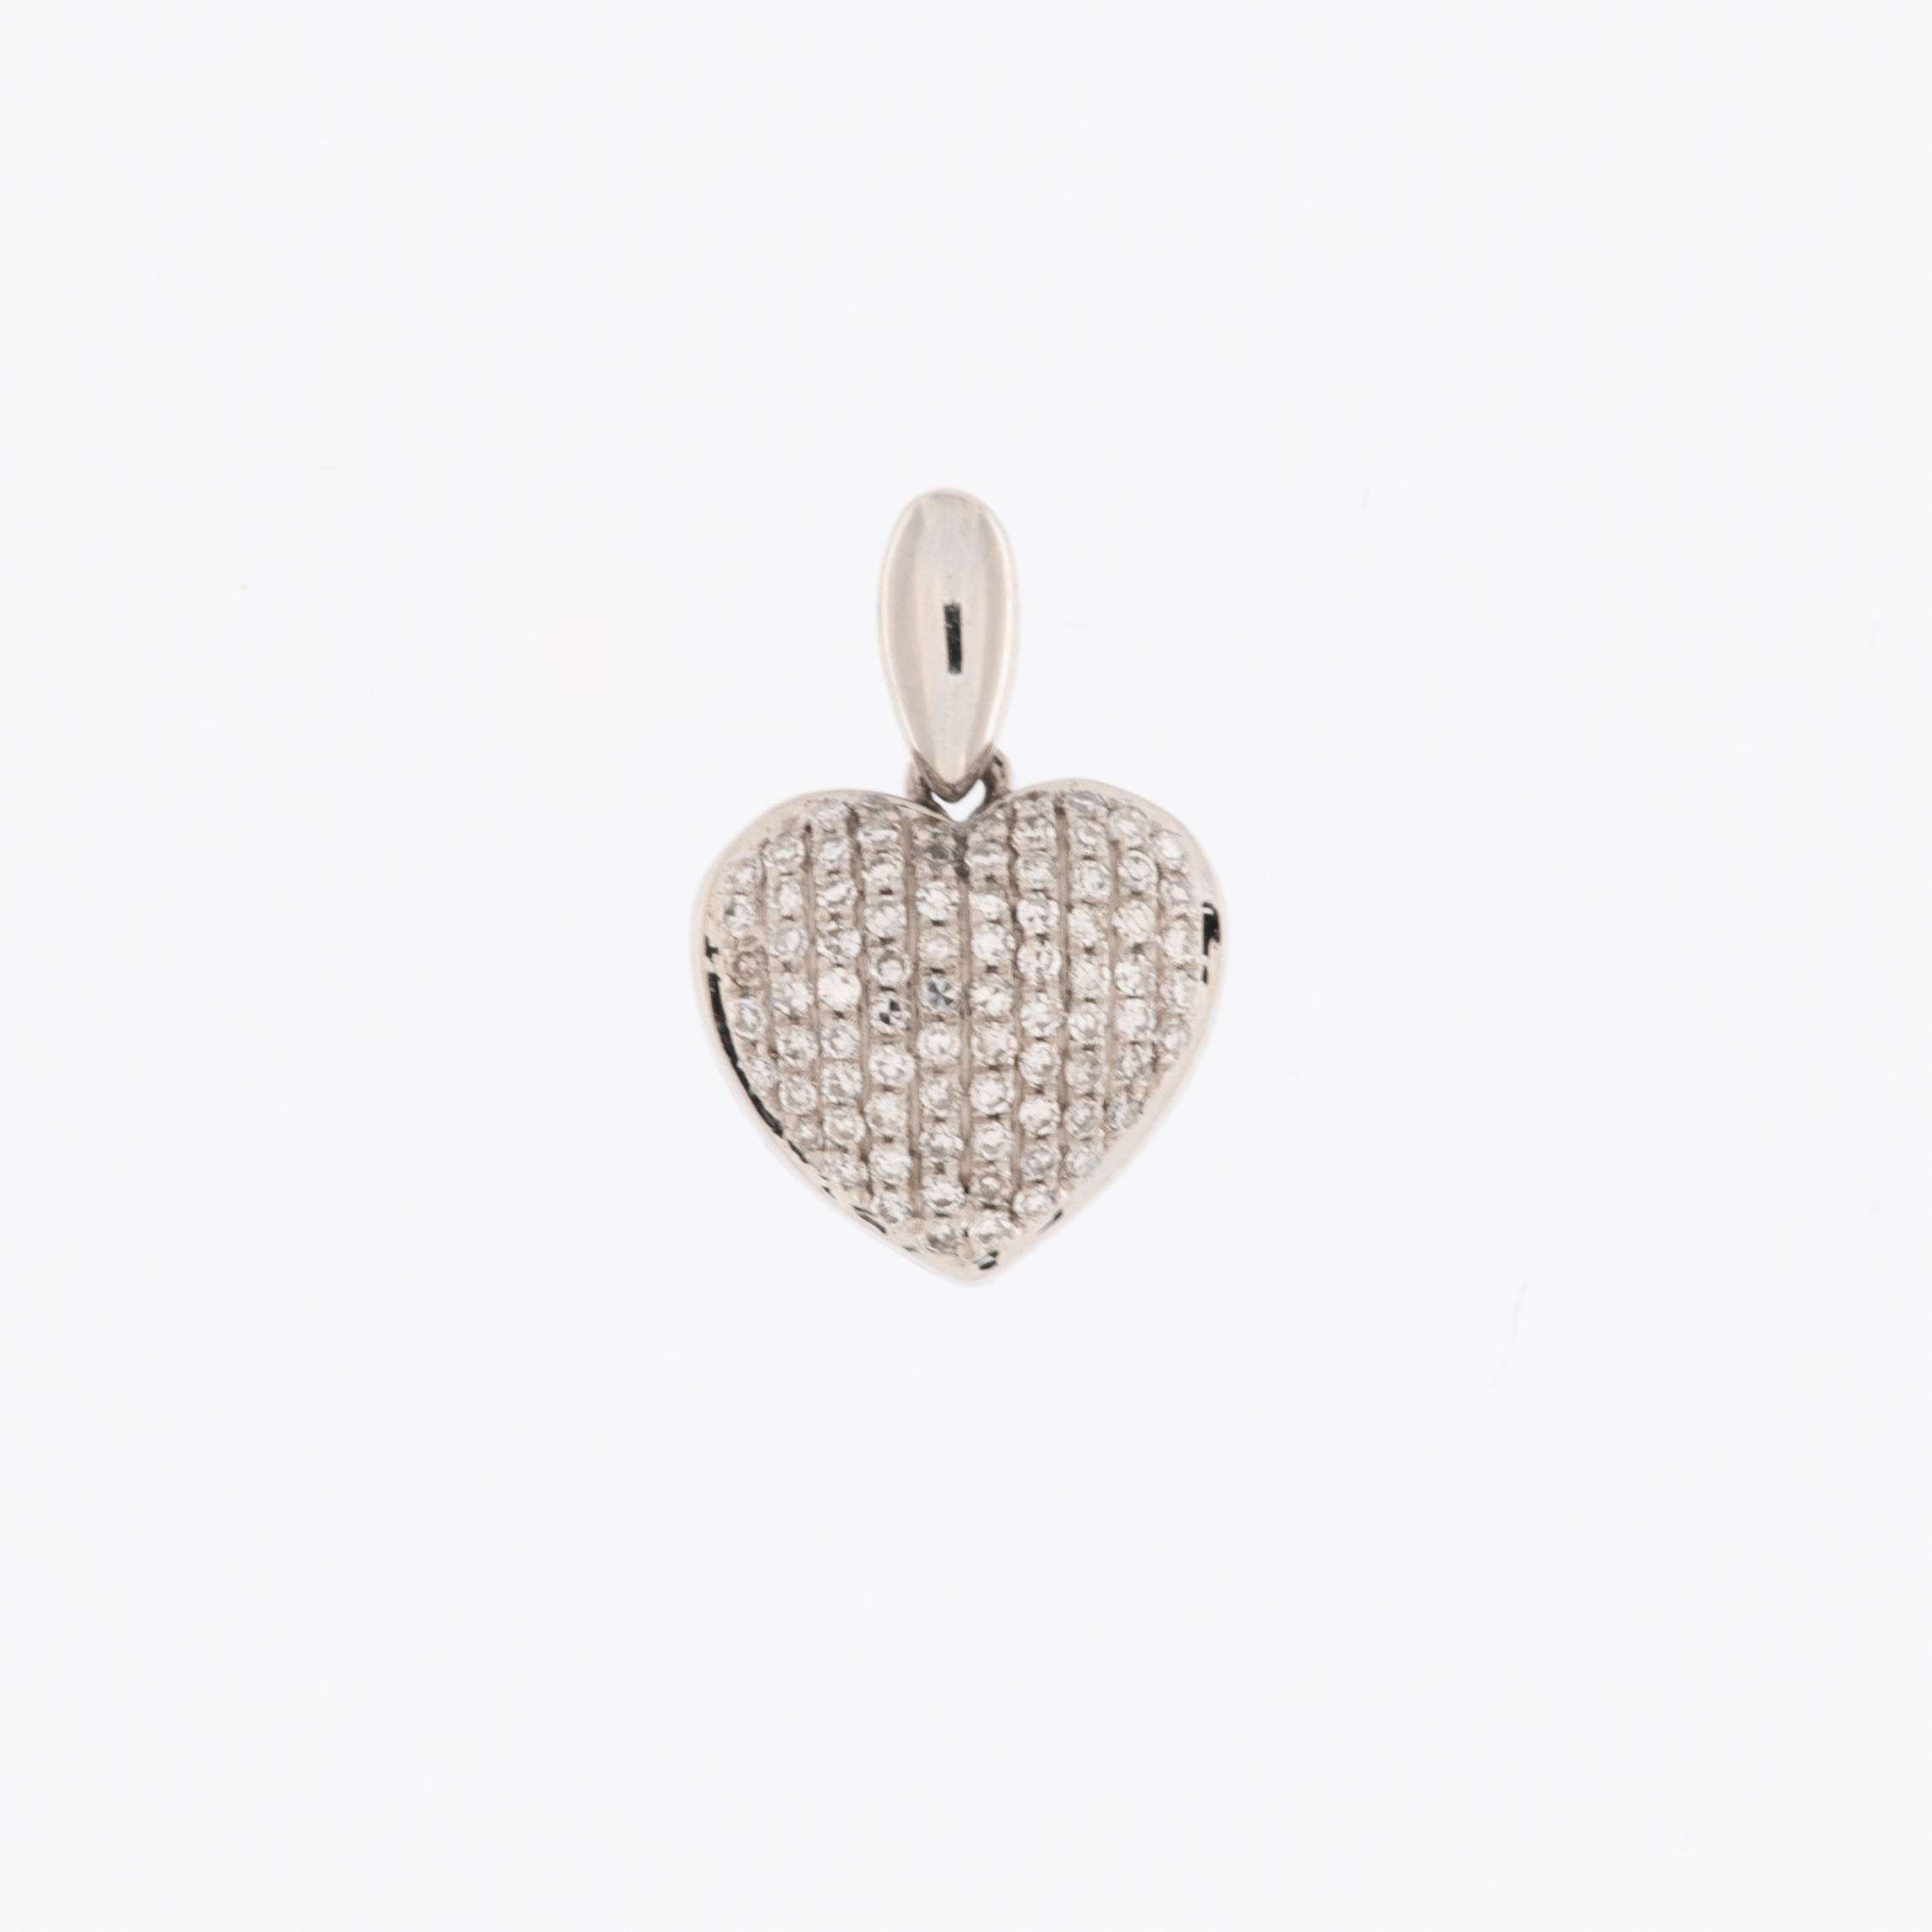 Le pendentif cœur pavé de diamants en or blanc est un emblème étonnant de grâce et d'élégance. Réalisé en or blanc 18 carats, ce pendentif arbore un design contemporain orné d'une brillance éblouissante.

Le pendentif présente une grappe de diamants